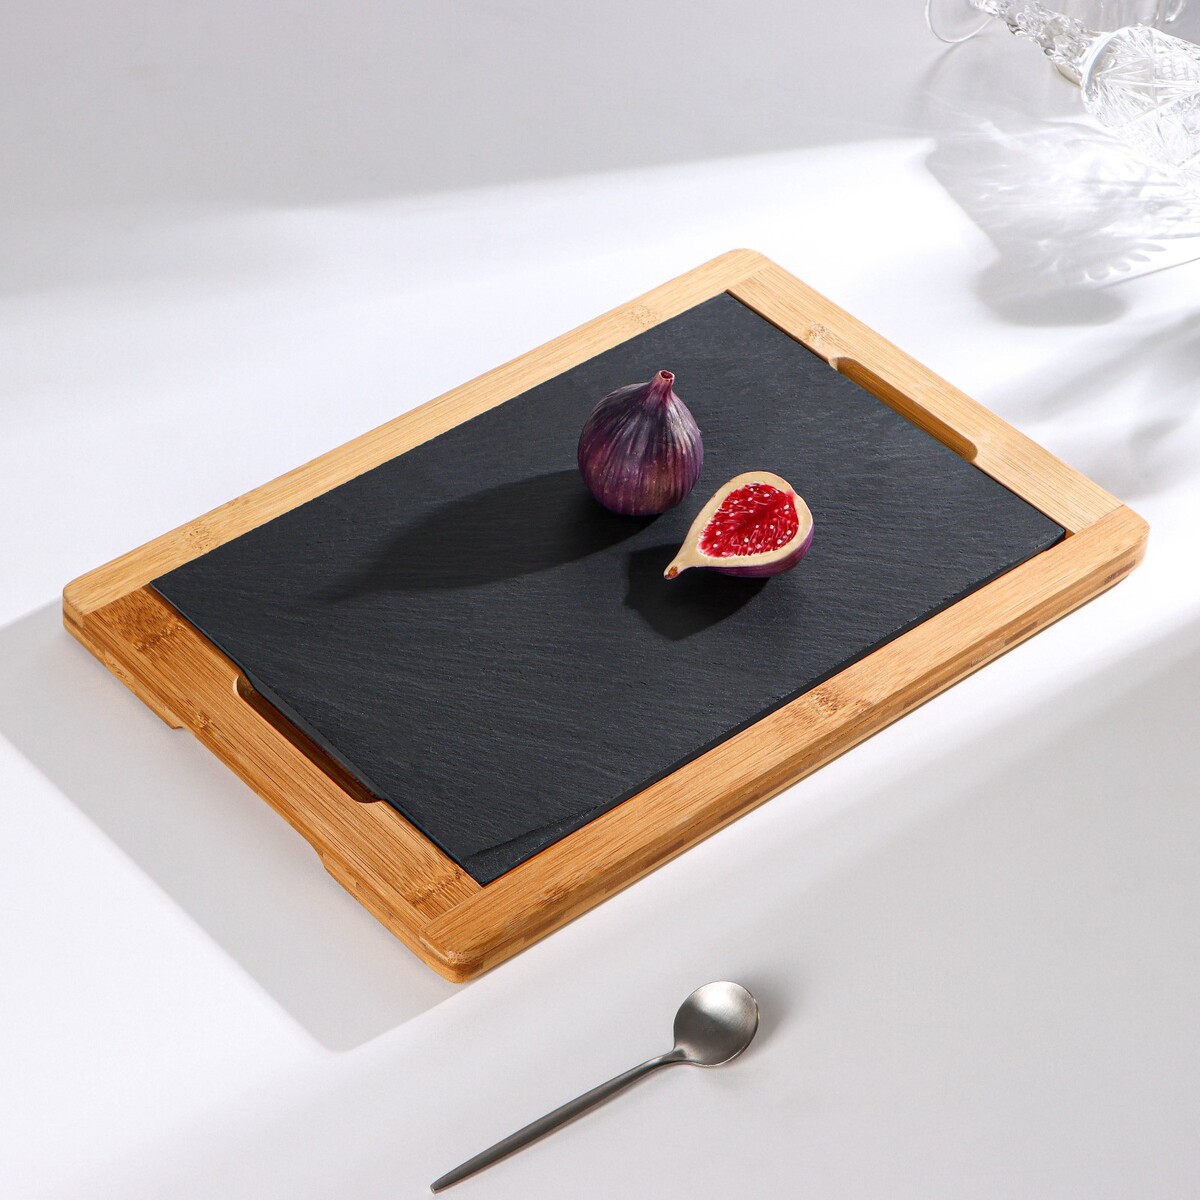 Блюдо для подачи magistro valley, 36×24 см, сланец, бамбук блюдо фарфоровое для подачи magistro pietra lunare 25×12 см чёрный